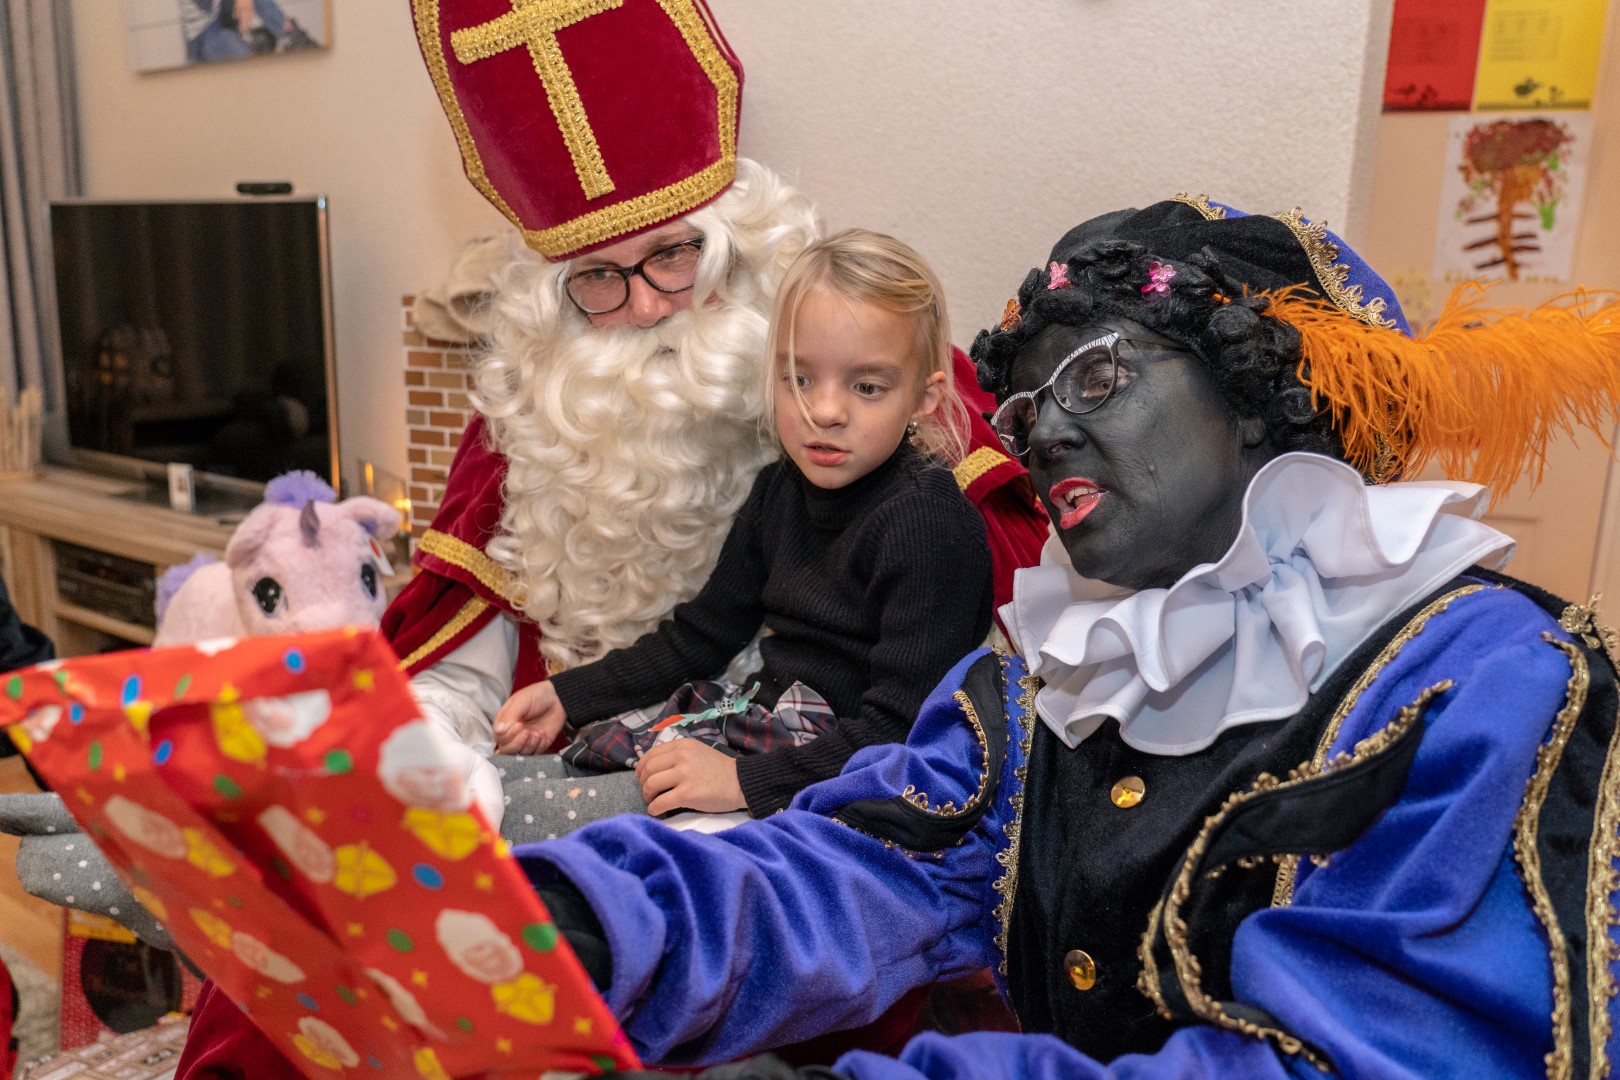 Schaduw Reden positie Sint en Pieten bezorgen 100 cadeaus bij Sofie uit Alblasserdam (filmpje) -  Alblasserdamsnieuws.nl